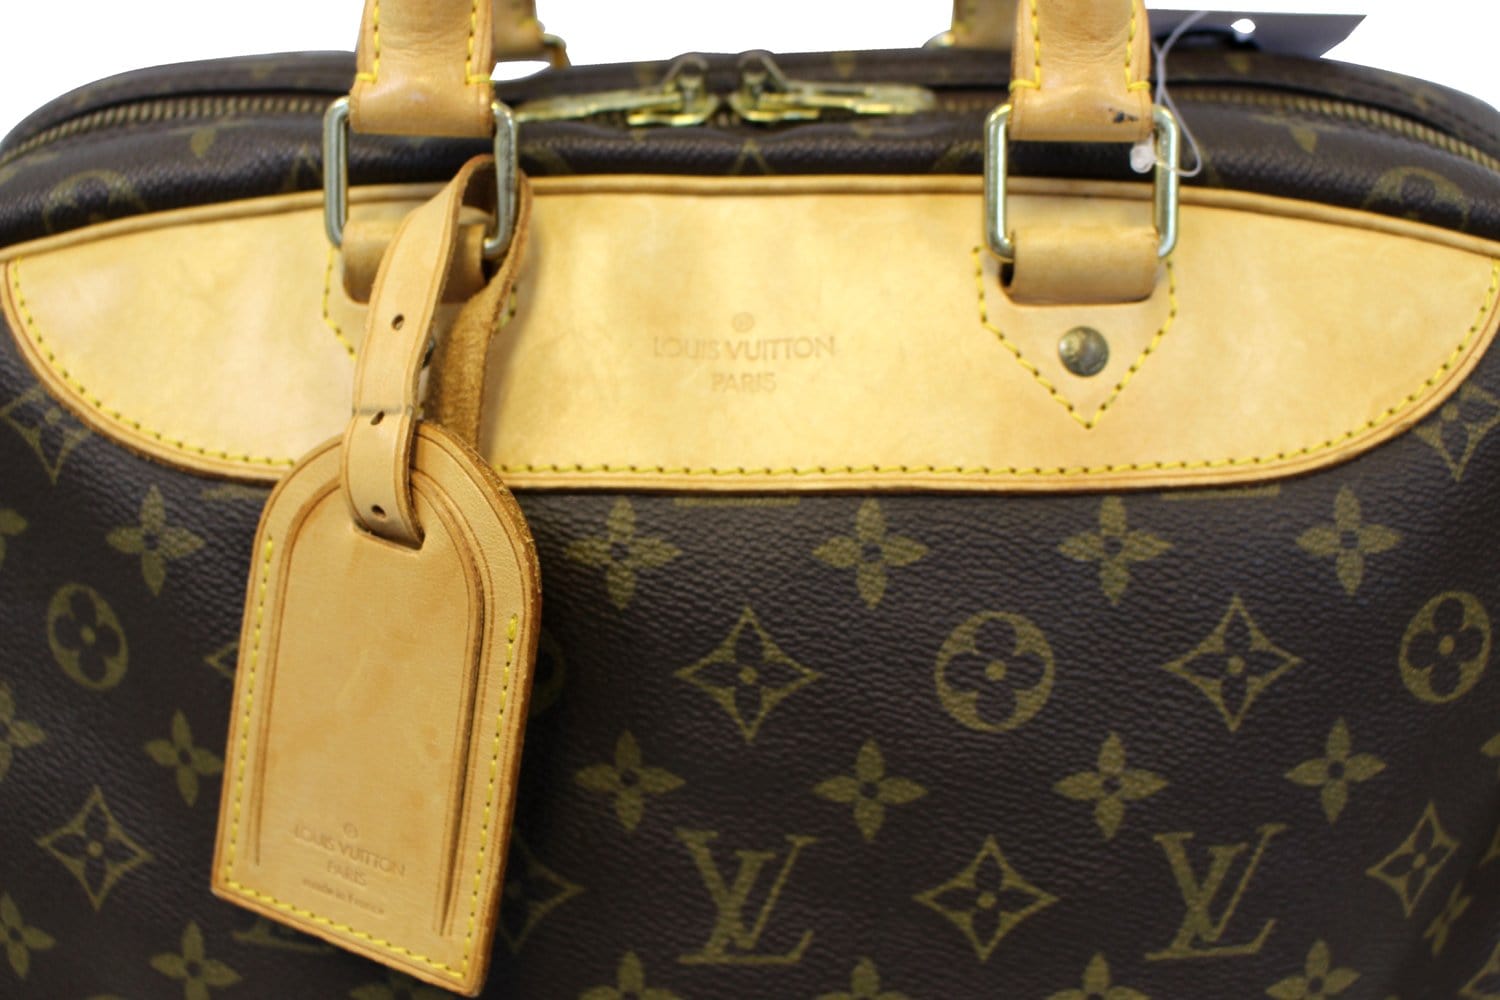 Louis Vuitton Evasion Boston Bag Travel Bag Monogram Brown Vintage